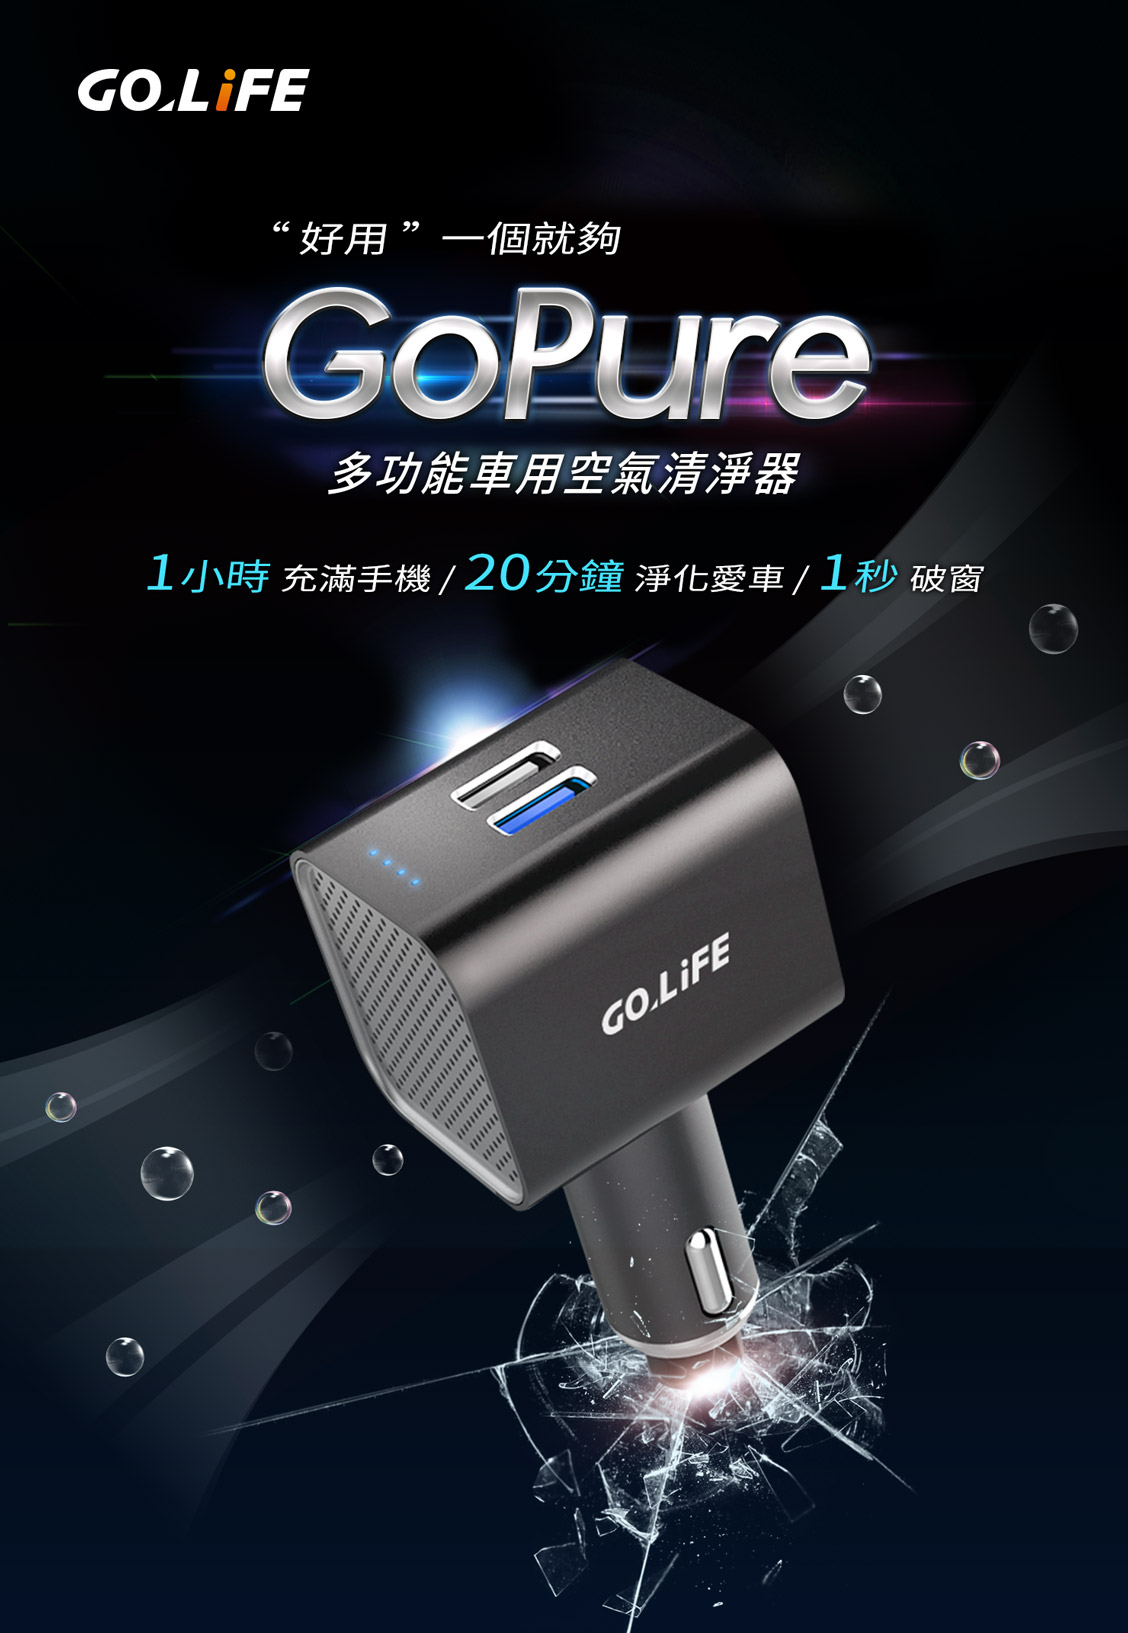 GoPure 多功能車用空氣清淨器：1 小時充滿手機 / 20 分鐘淨化愛車 / 1 秒破窗